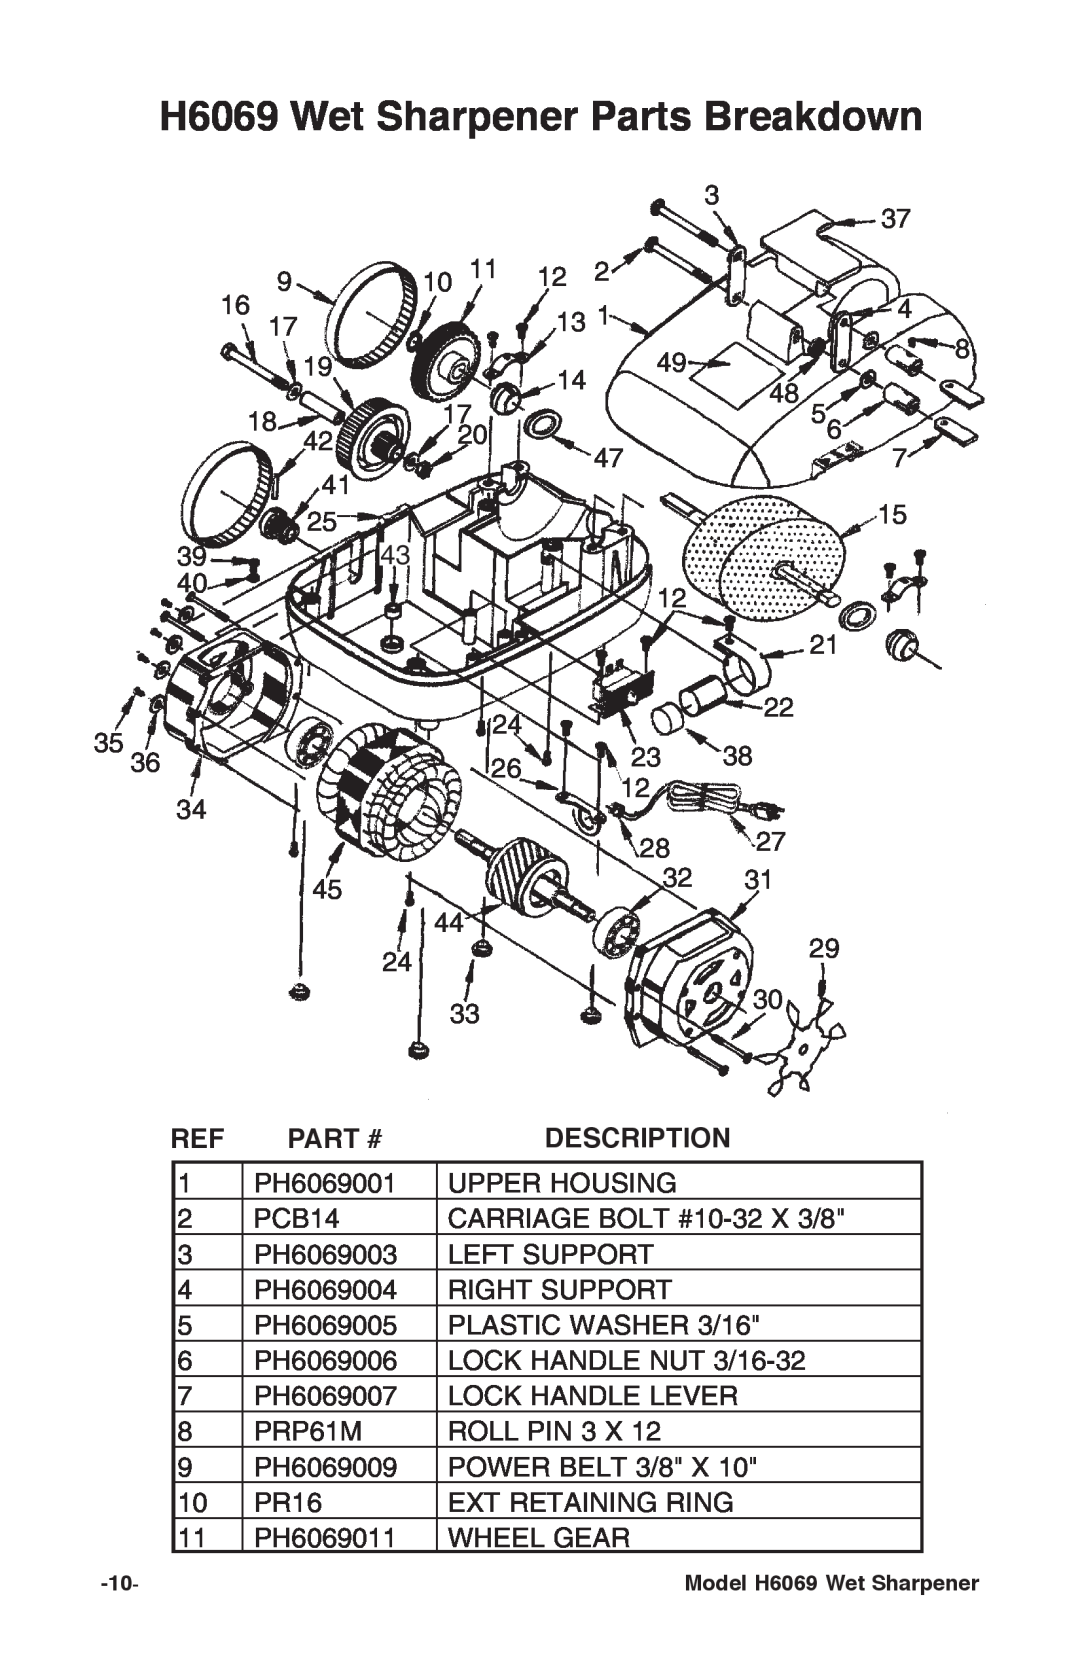 Grizzly instruction manual H6069 Wet Sharpener Parts Breakdown, Part #, Description 